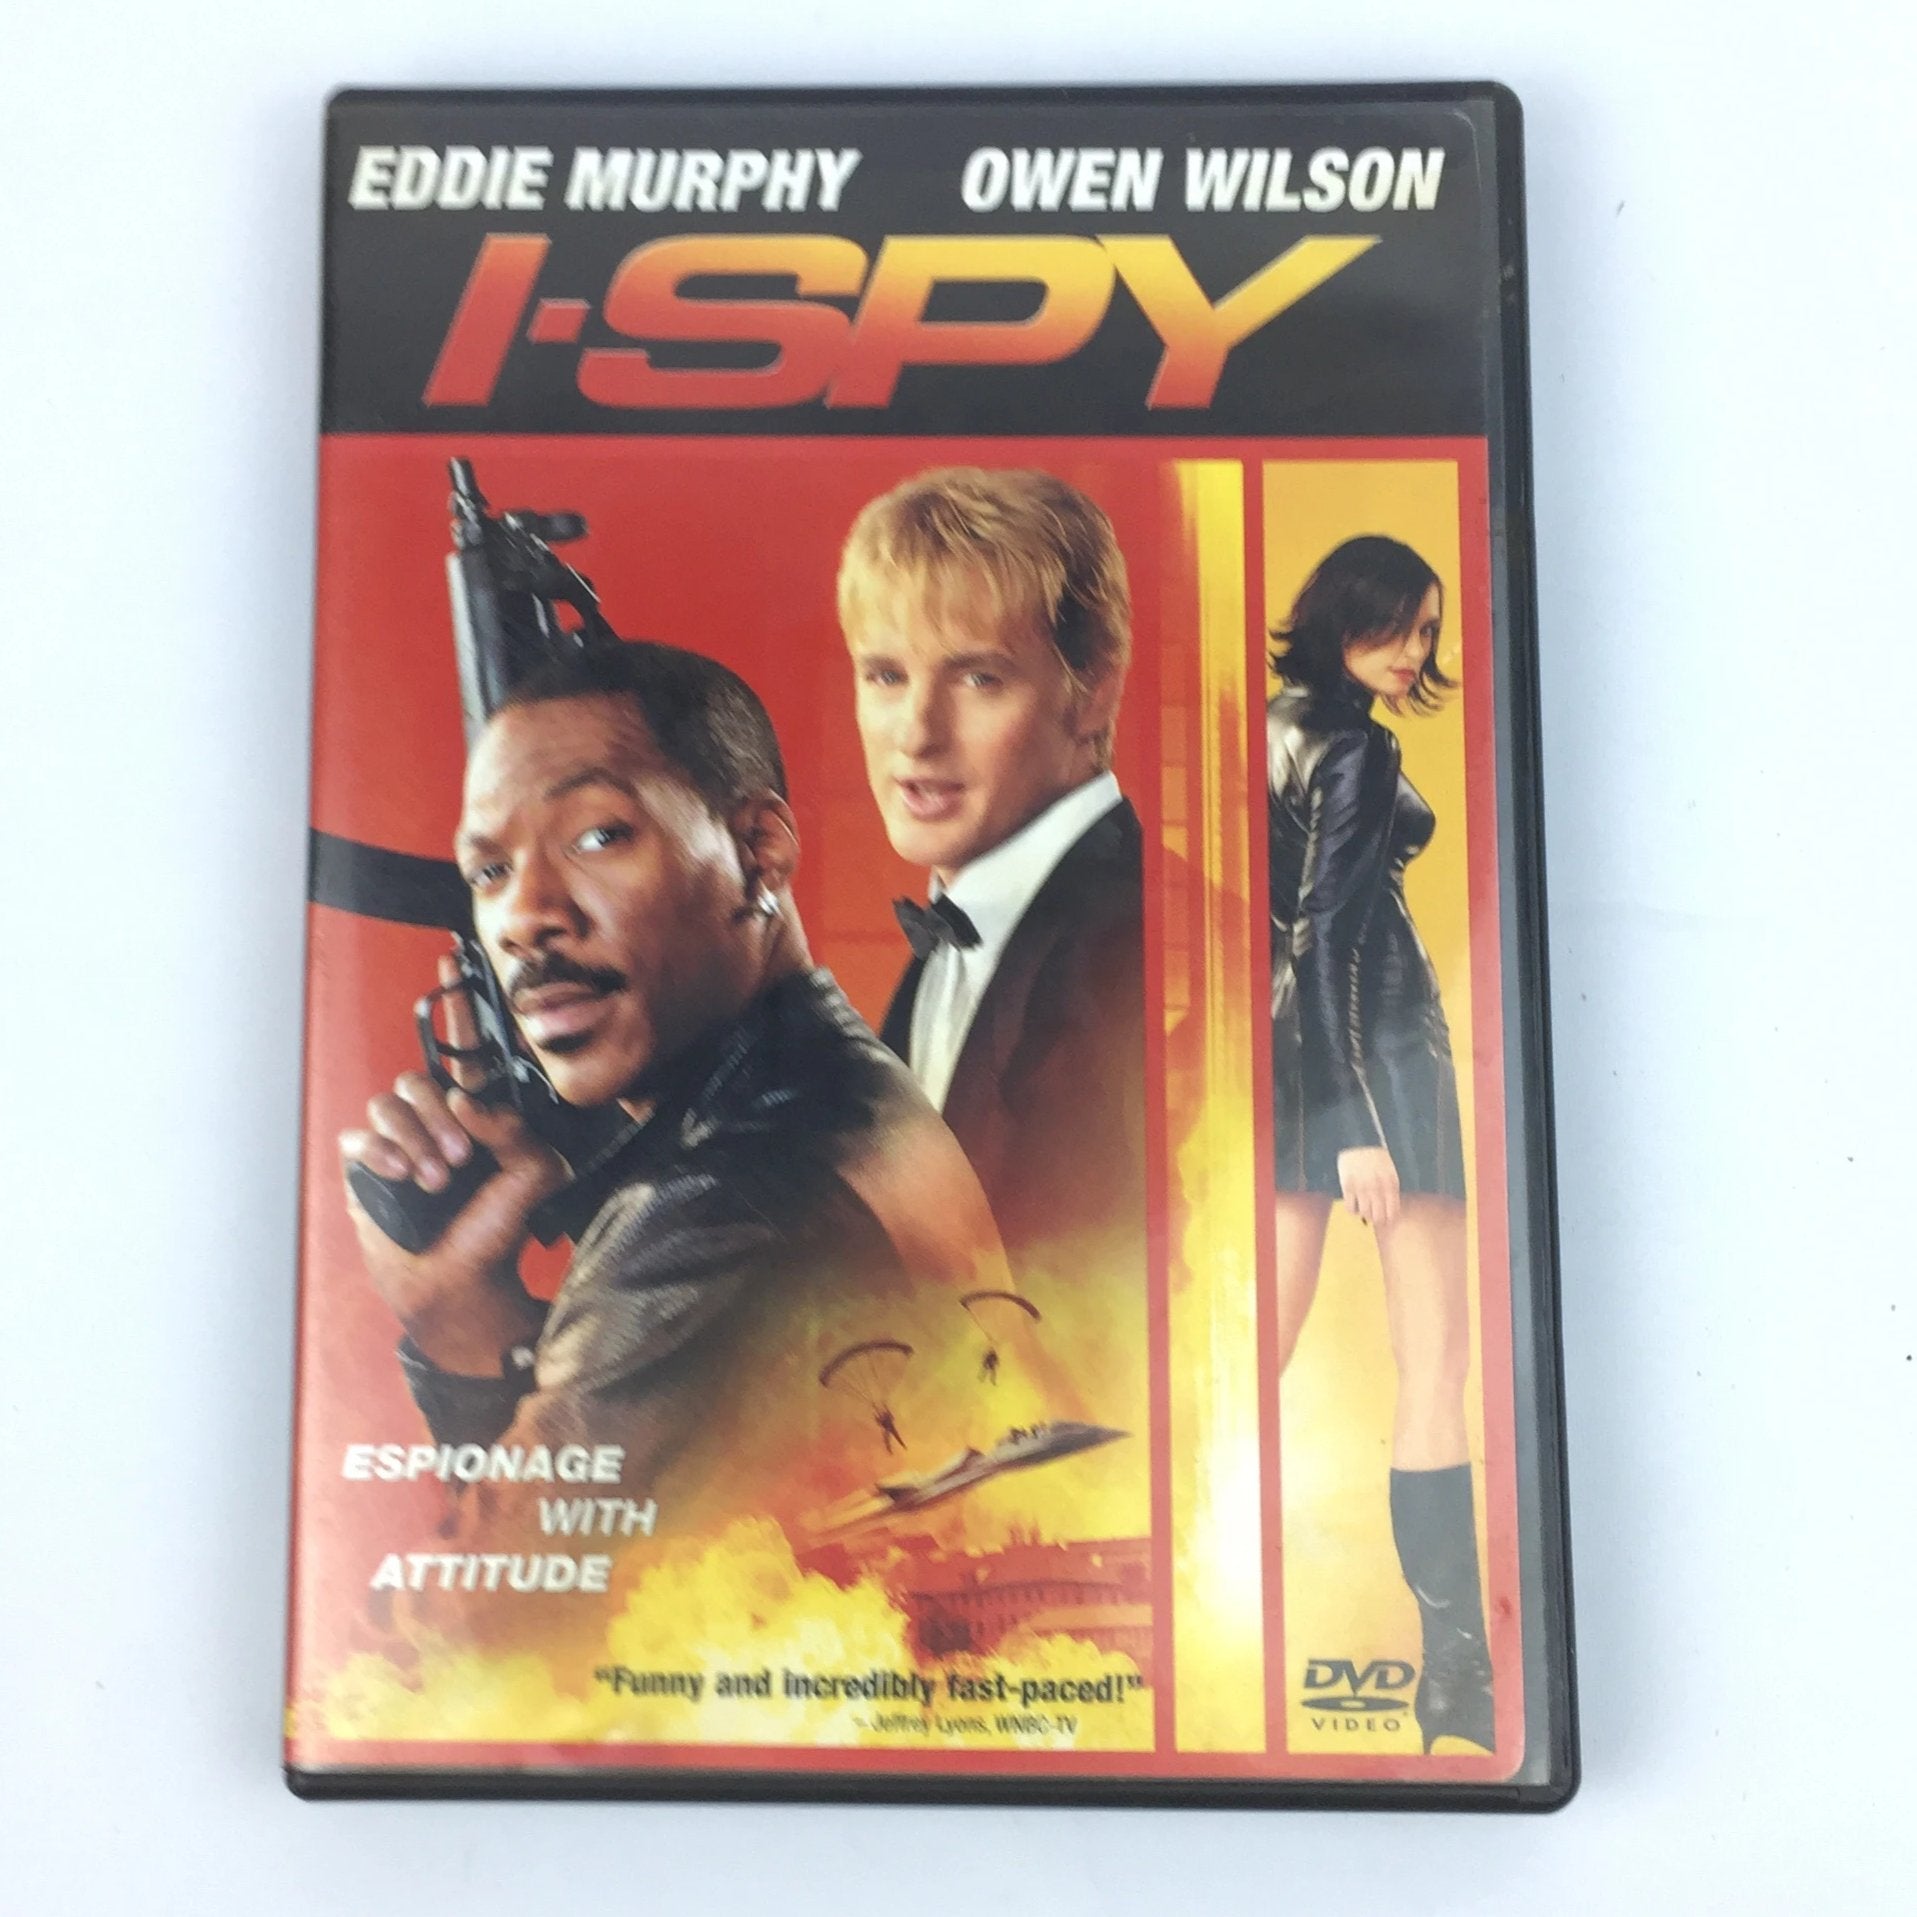 I Spy (DVD, 2003) Eddie Murphy, Owen Wilson